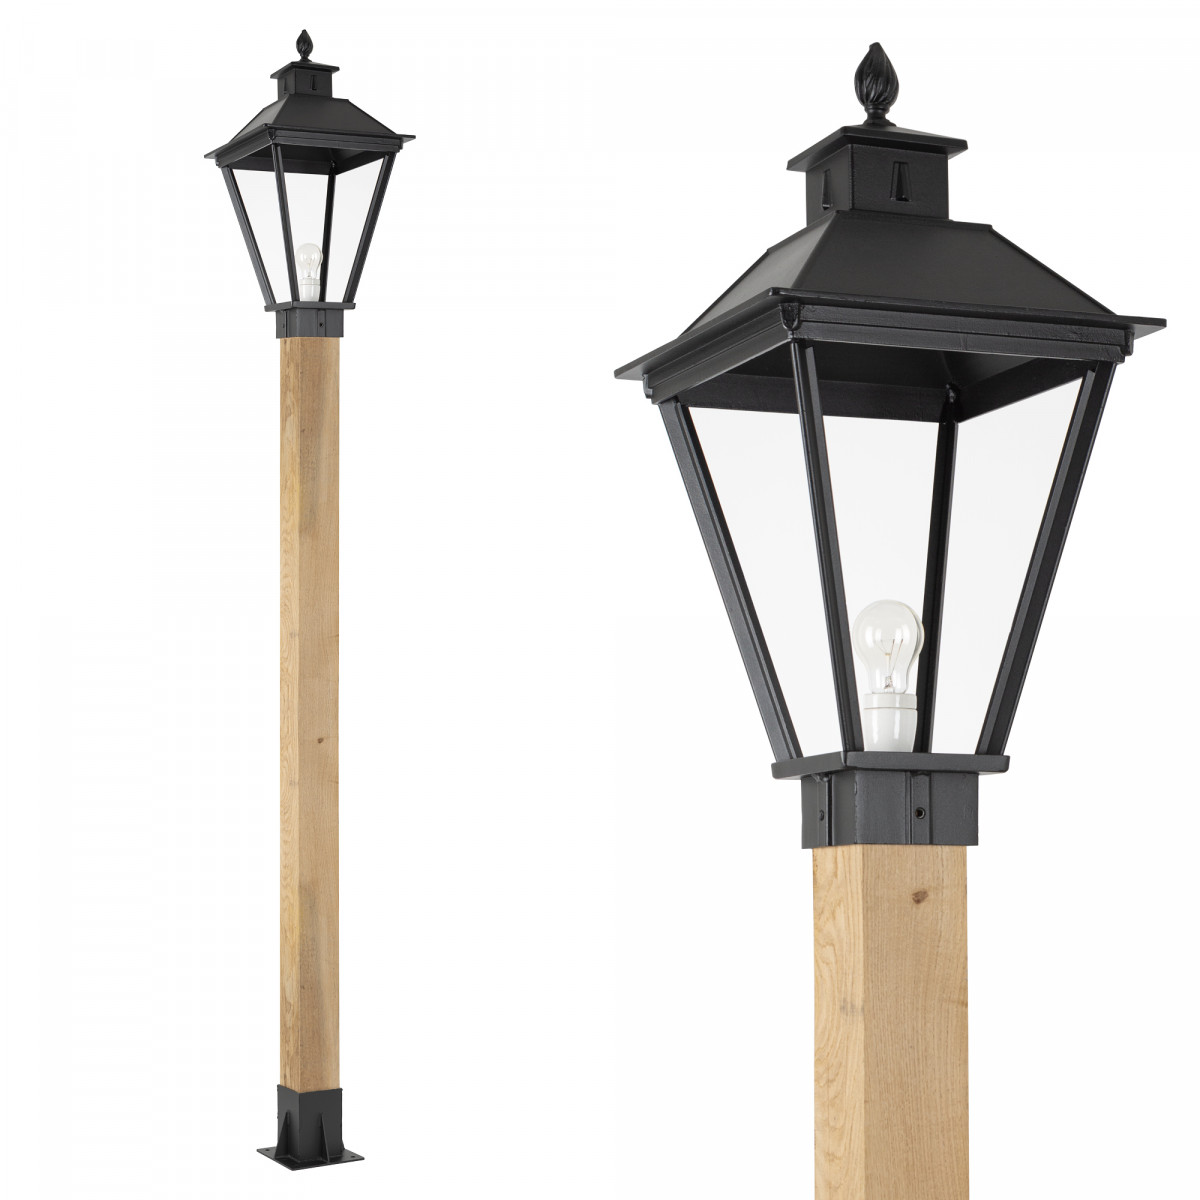 Klassieke buitenlamp Square XL WOOD Lantaarn tuinlamp vierkant in de kleur zwart